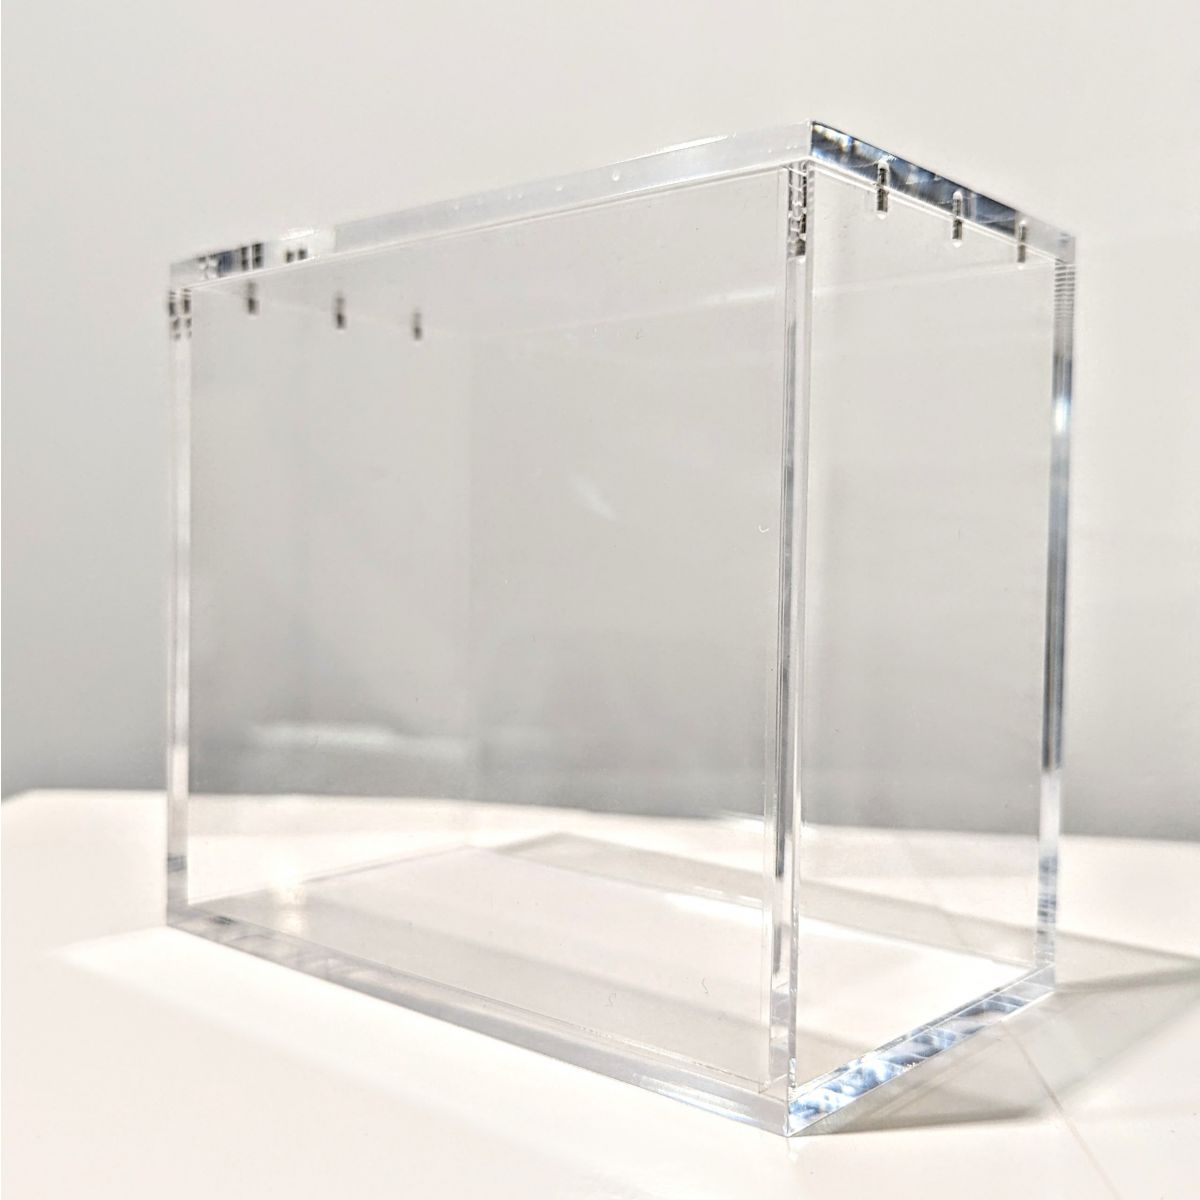 Treasurewise – Displayschutz aus Plexiglas – Booster-Box – magnetischer Deckel